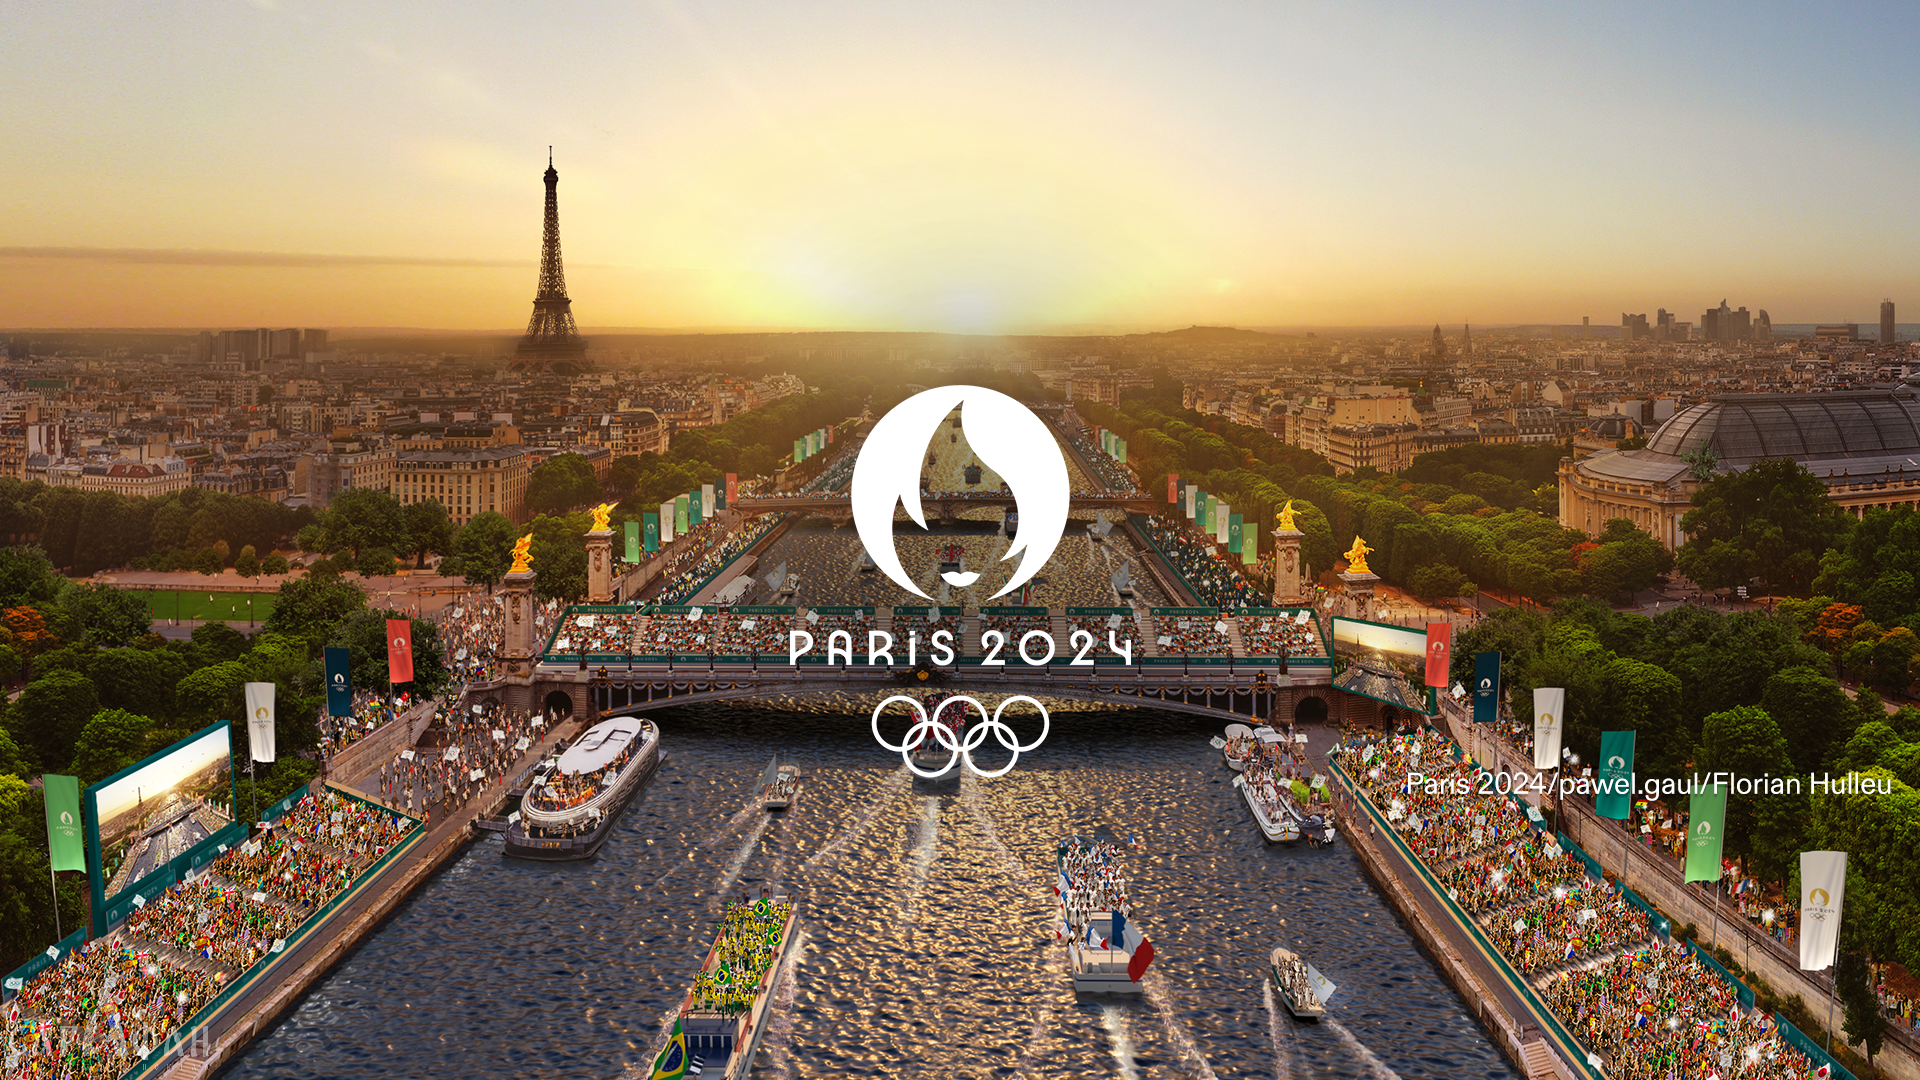 Церемонию открытия Олимпиады в Париже из-за угрозы терактов могут отменить